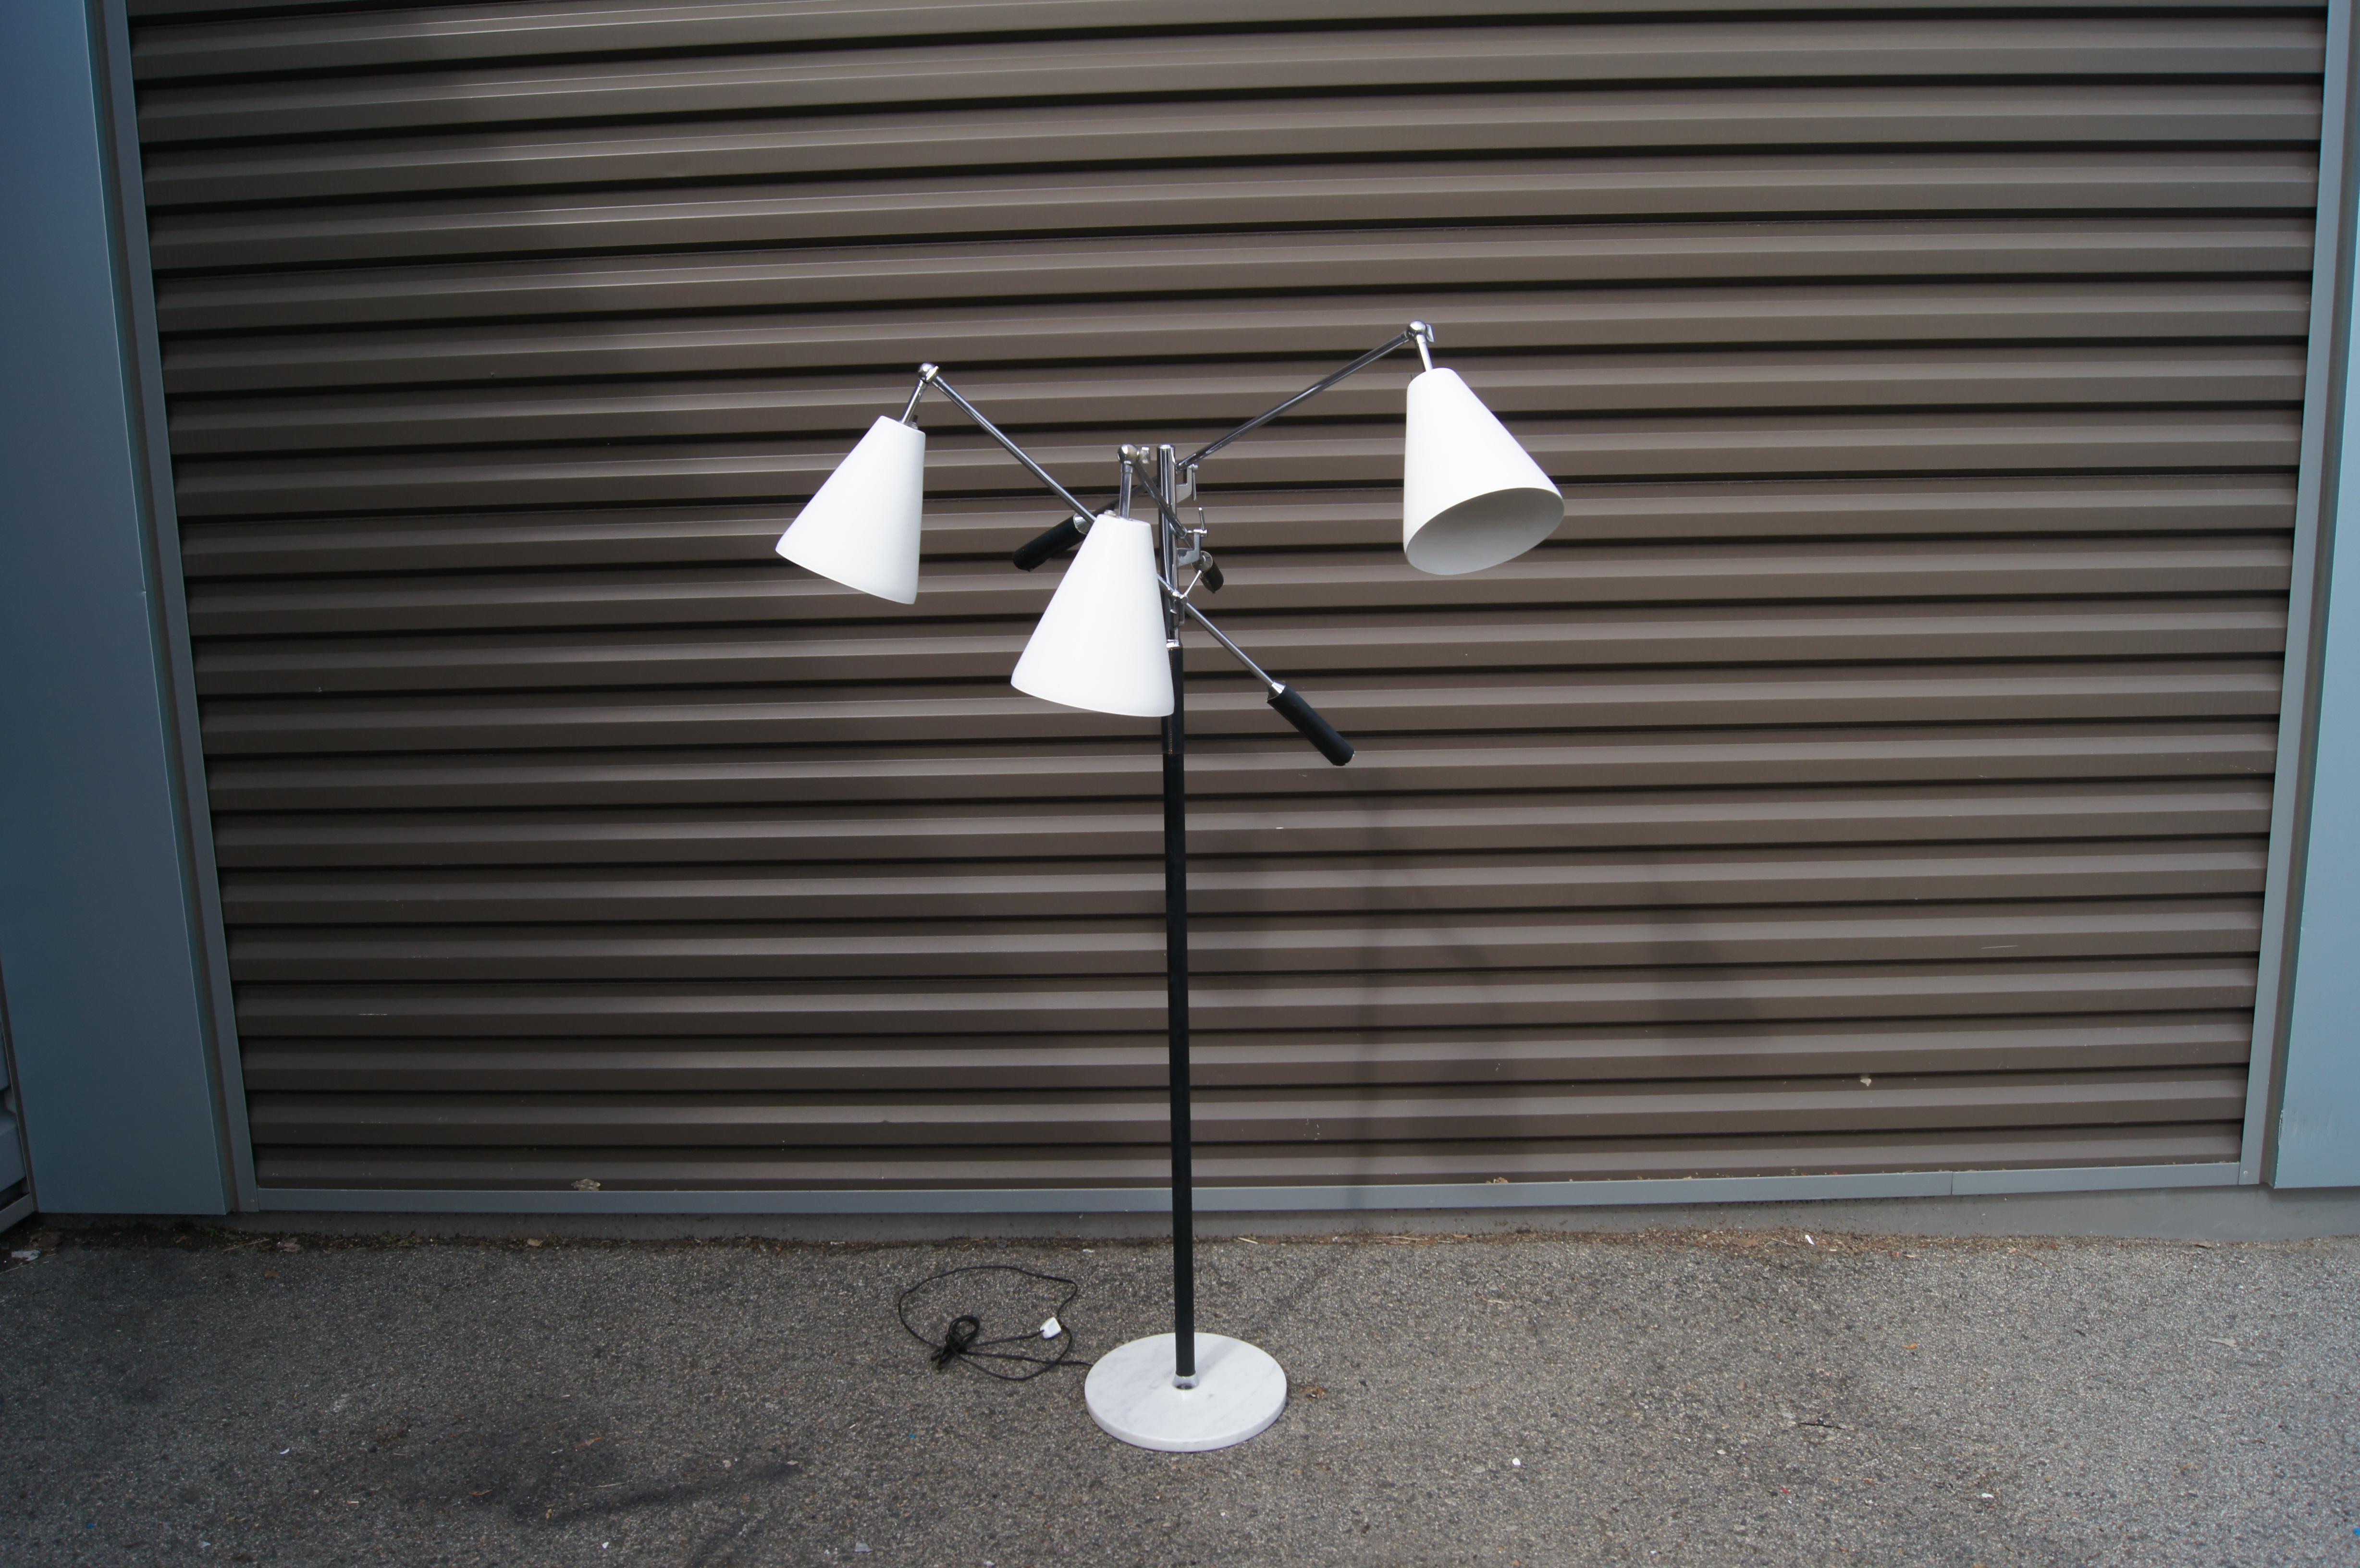 Ce lampadaire Triennale des années 1960, dans le style d'Arredoluce, a été fabriqué en Italie pour l'entreprise américaine de luminaires Koch & Lowy. Un poteau chromé émaillé noir s'élève sur une base ronde en marbre. Trois bras chromés avec des